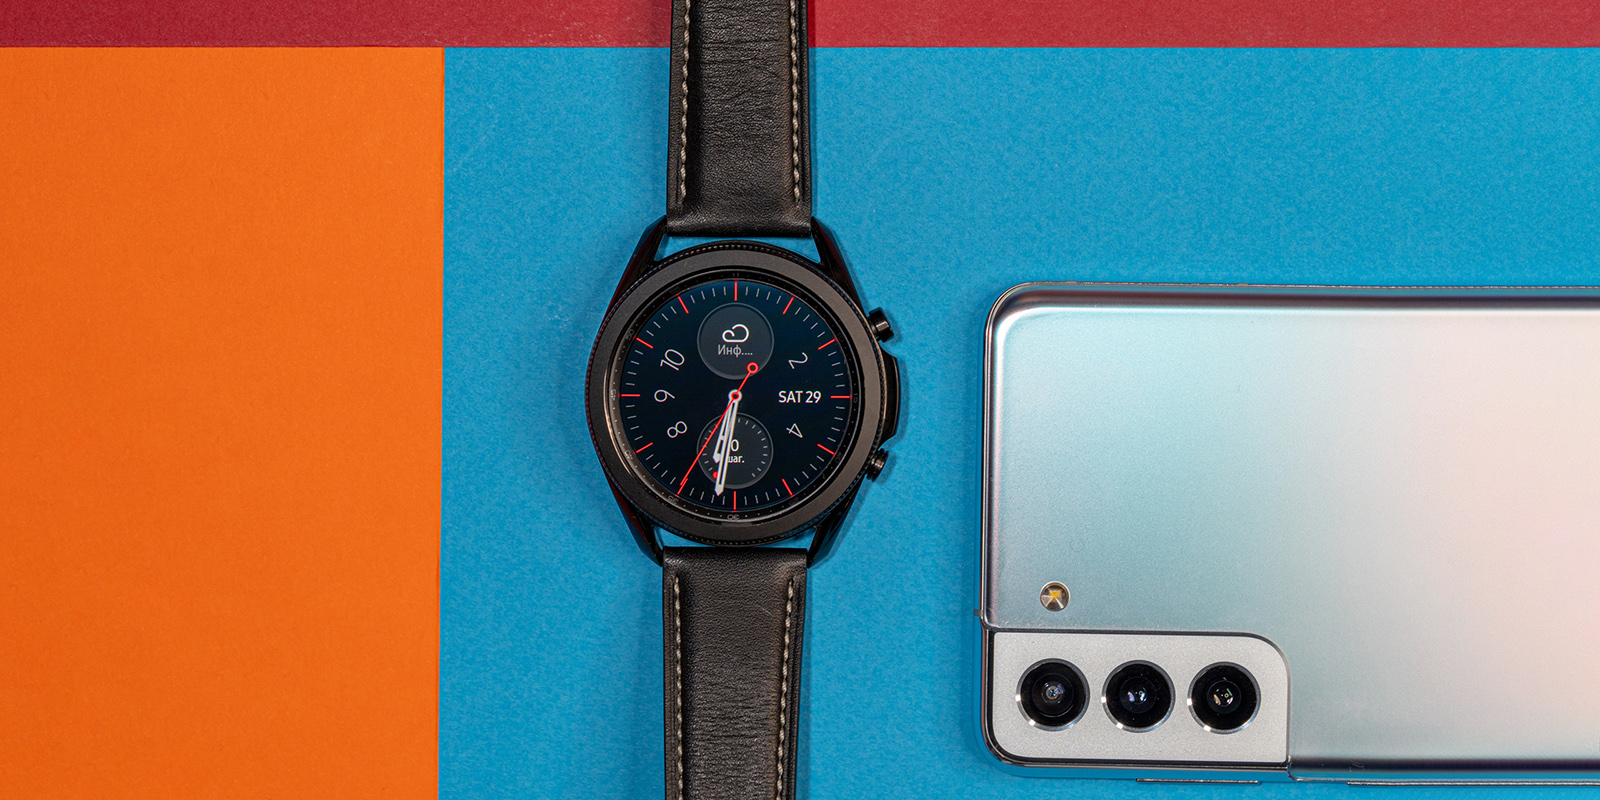 Samsung watch функции. Обои на самсунг галакси вотч 4. Интересные фоны для самсунг гелакси вотч 4. Обои Винтаж часы Samsung Galaxy a03s. Обои на часы галакси вотч картинки.